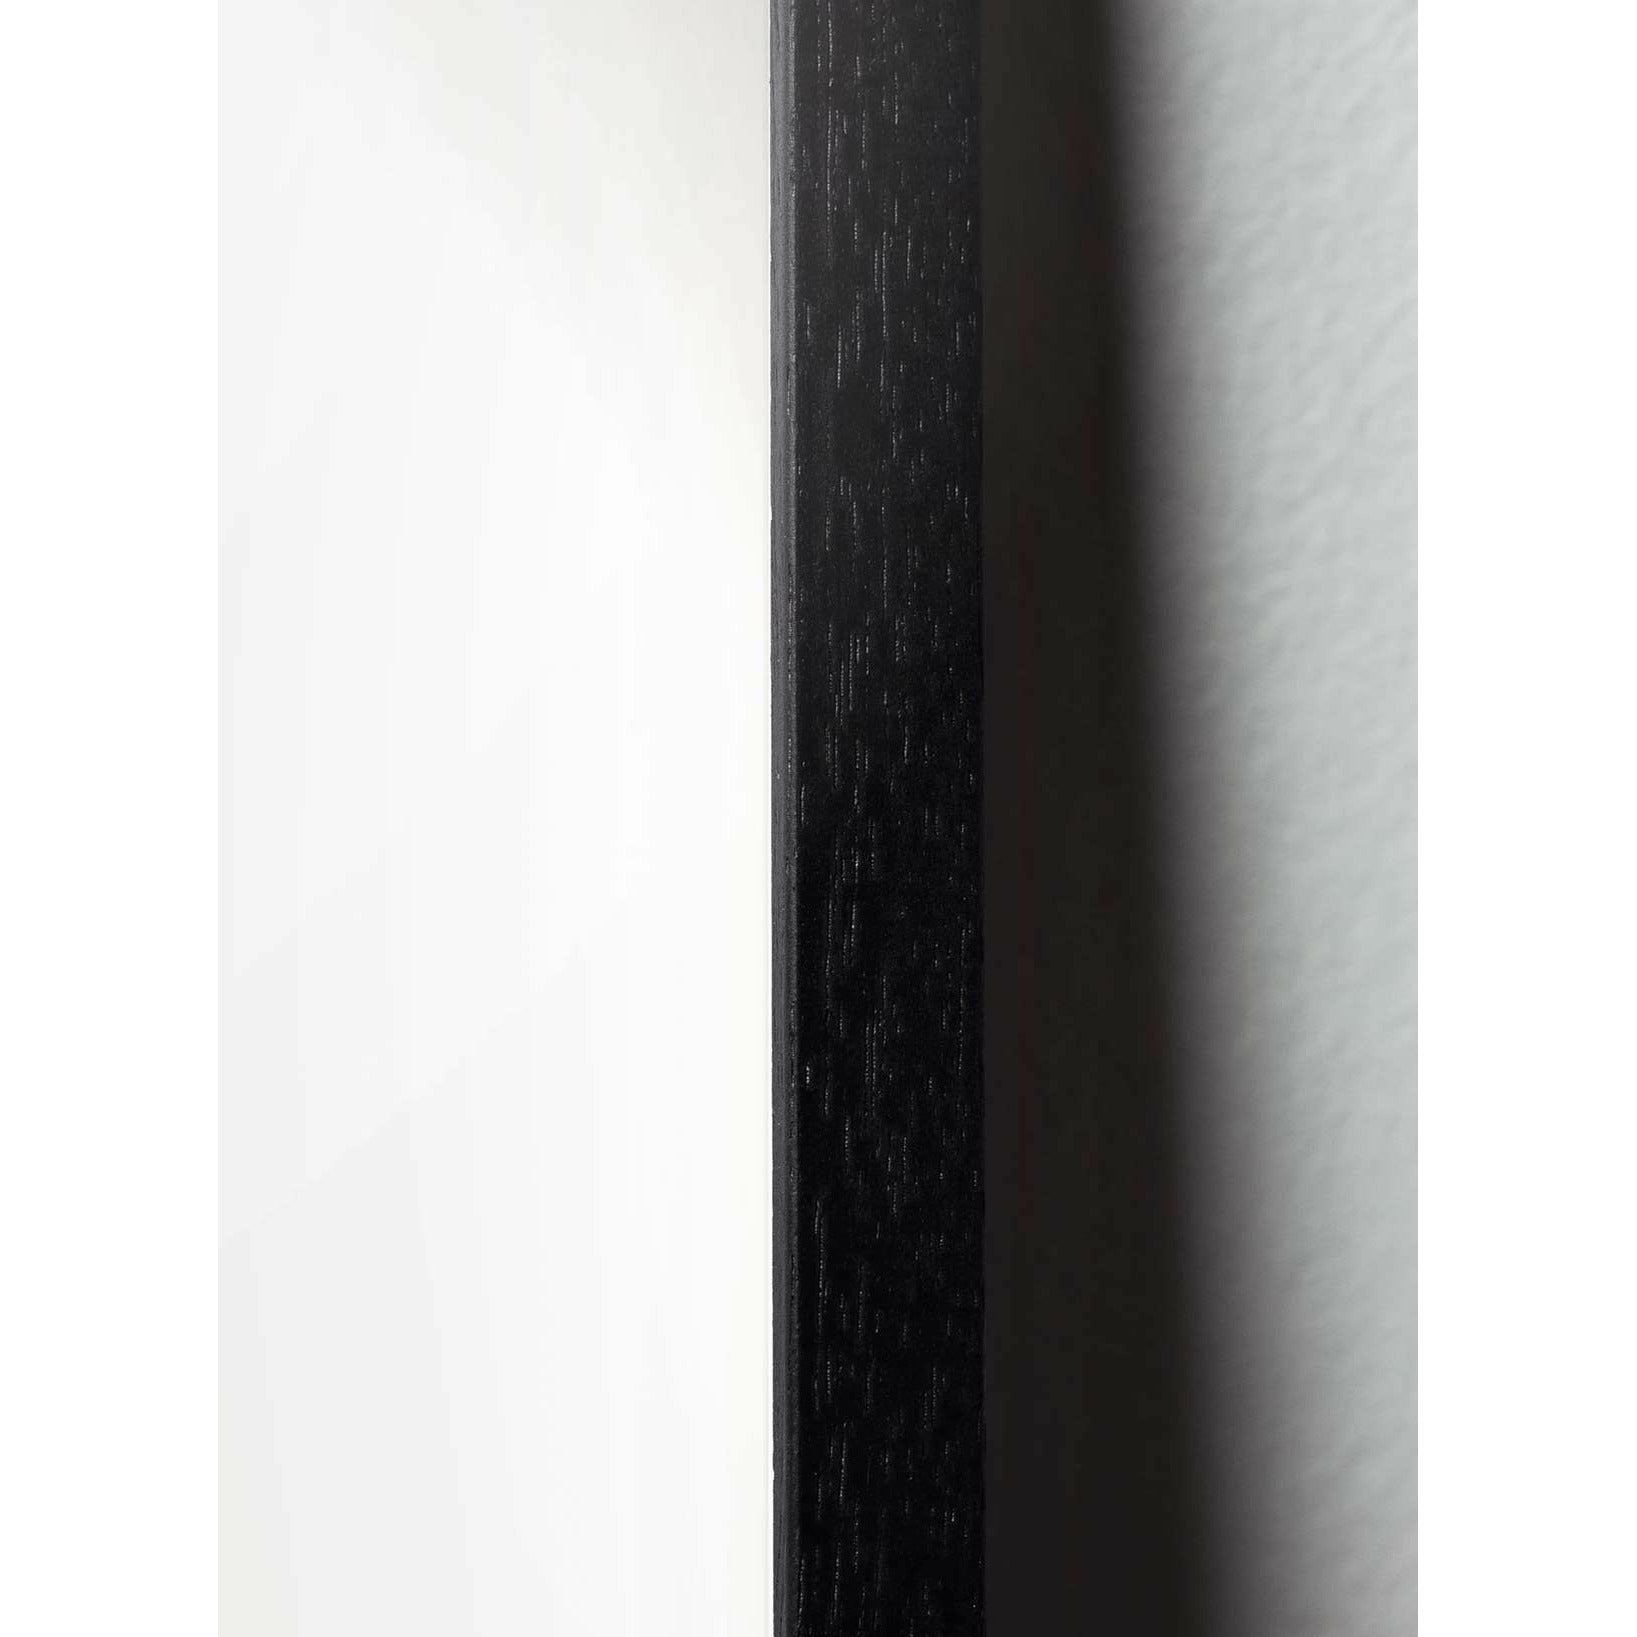 Brainchild Pelican Classic -affisch, ram i svart -målat trä 50x70 cm, mörkblå bakgrund